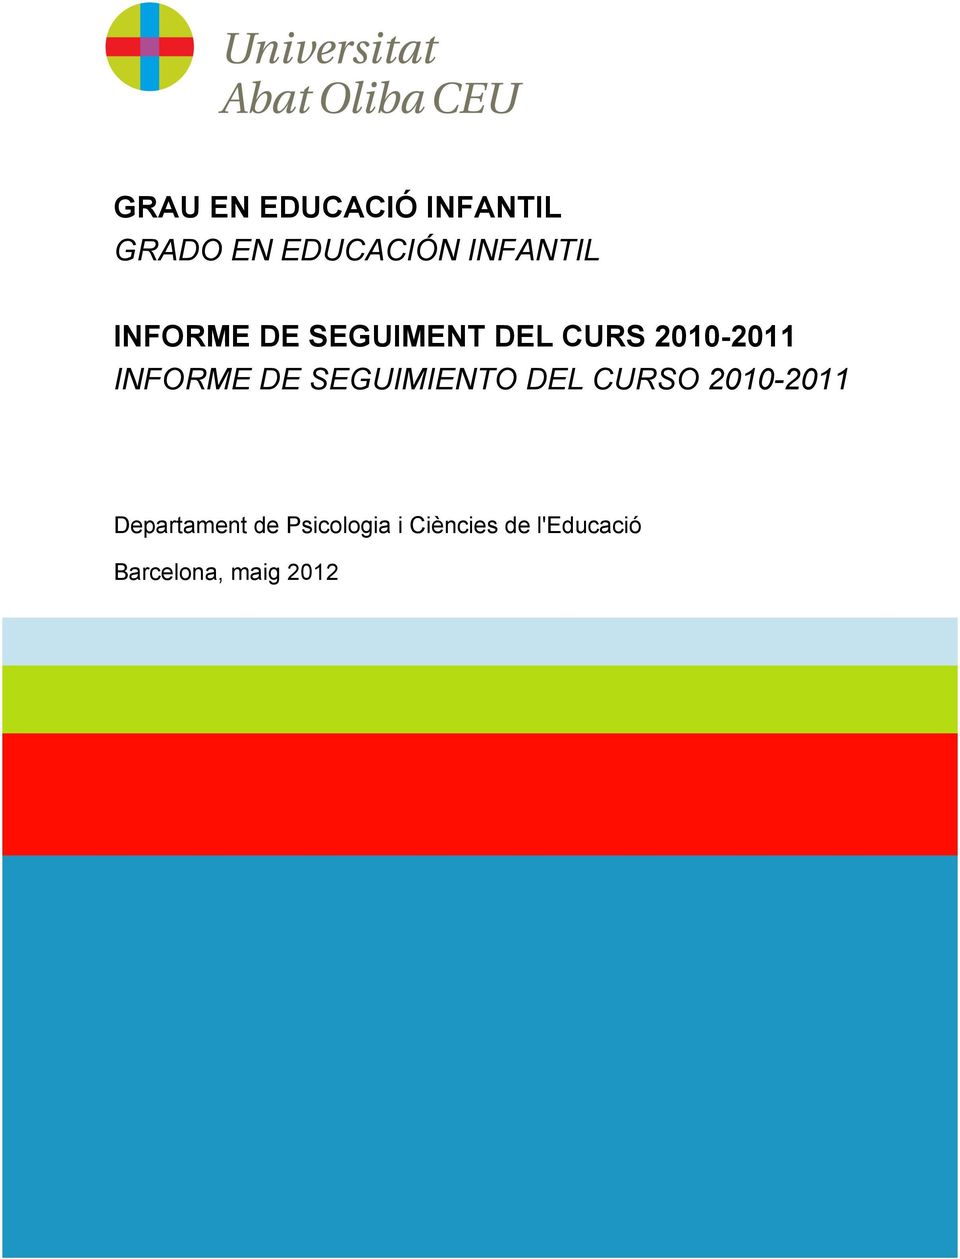 INFORME DE SEGUIMIENTO DEL CURSO 2010-2011